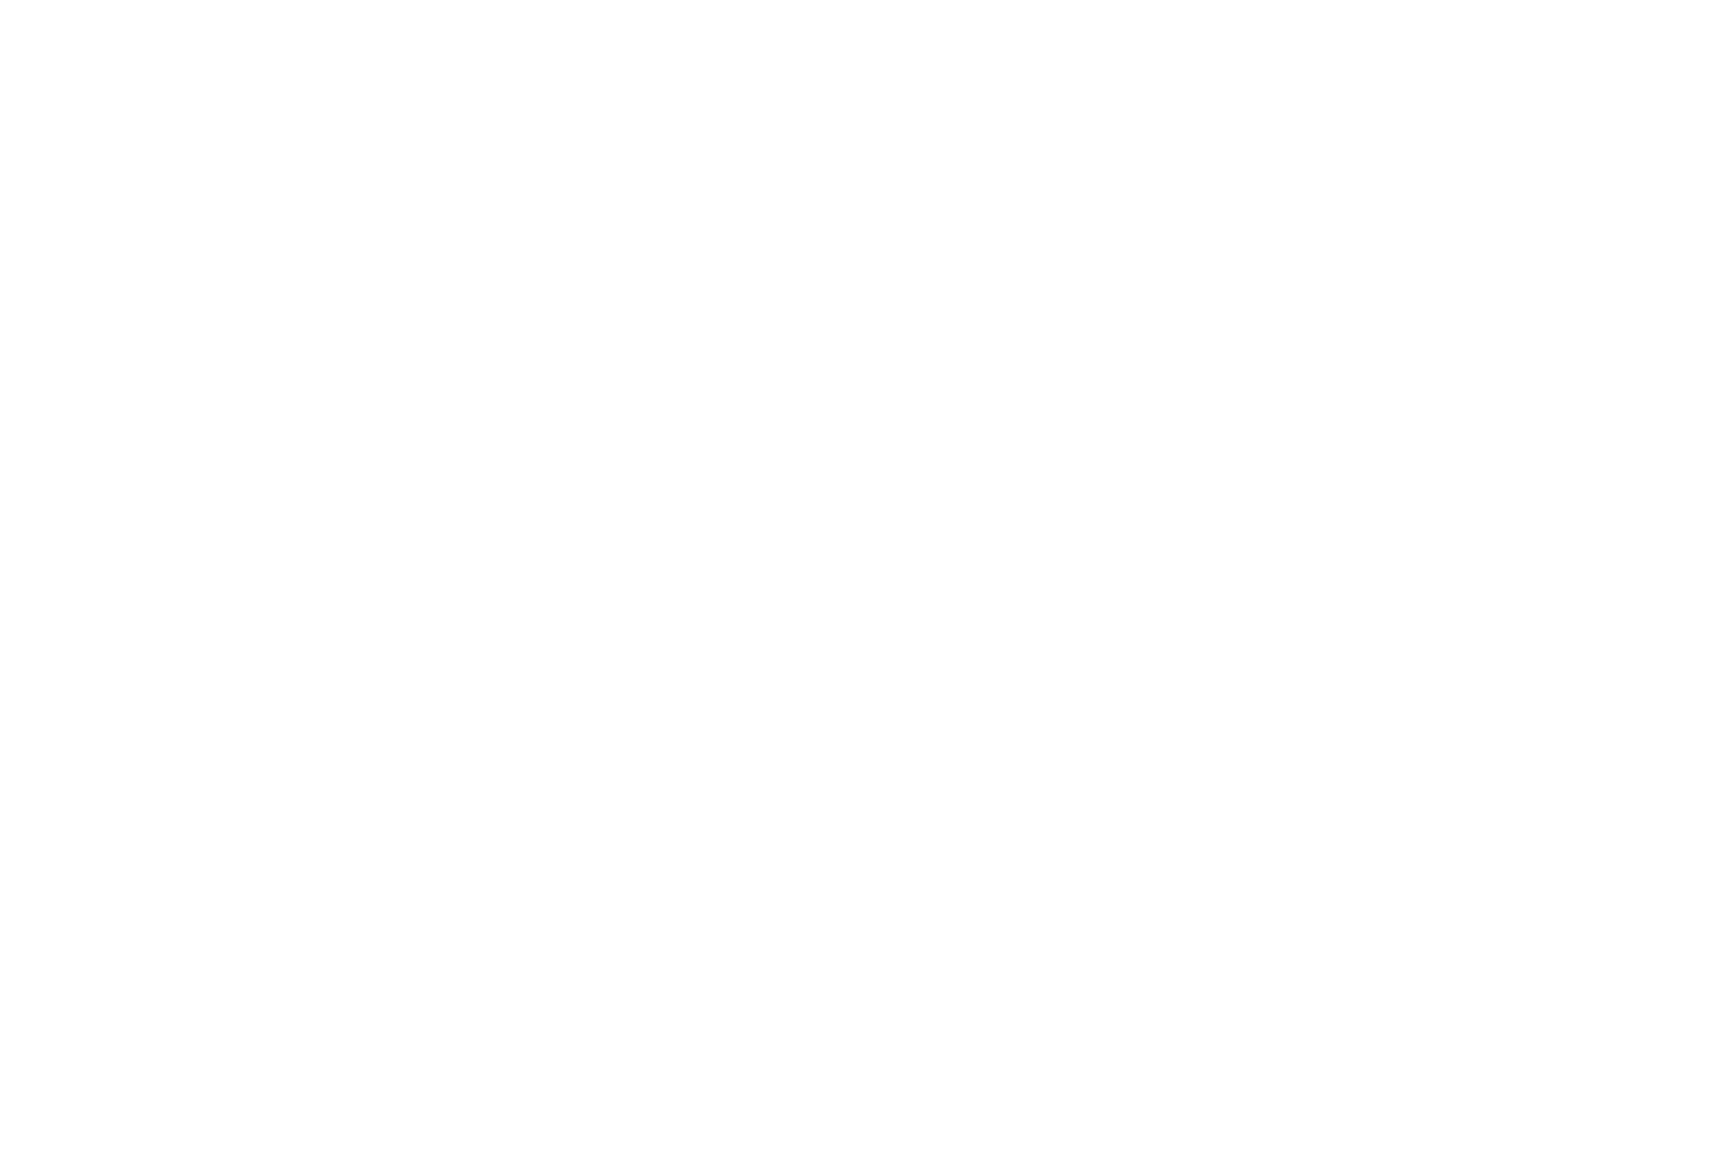 MIGLIOR-SOGGETTO-FUORI-LIMITE-Fluvione-Film-Festival-2021